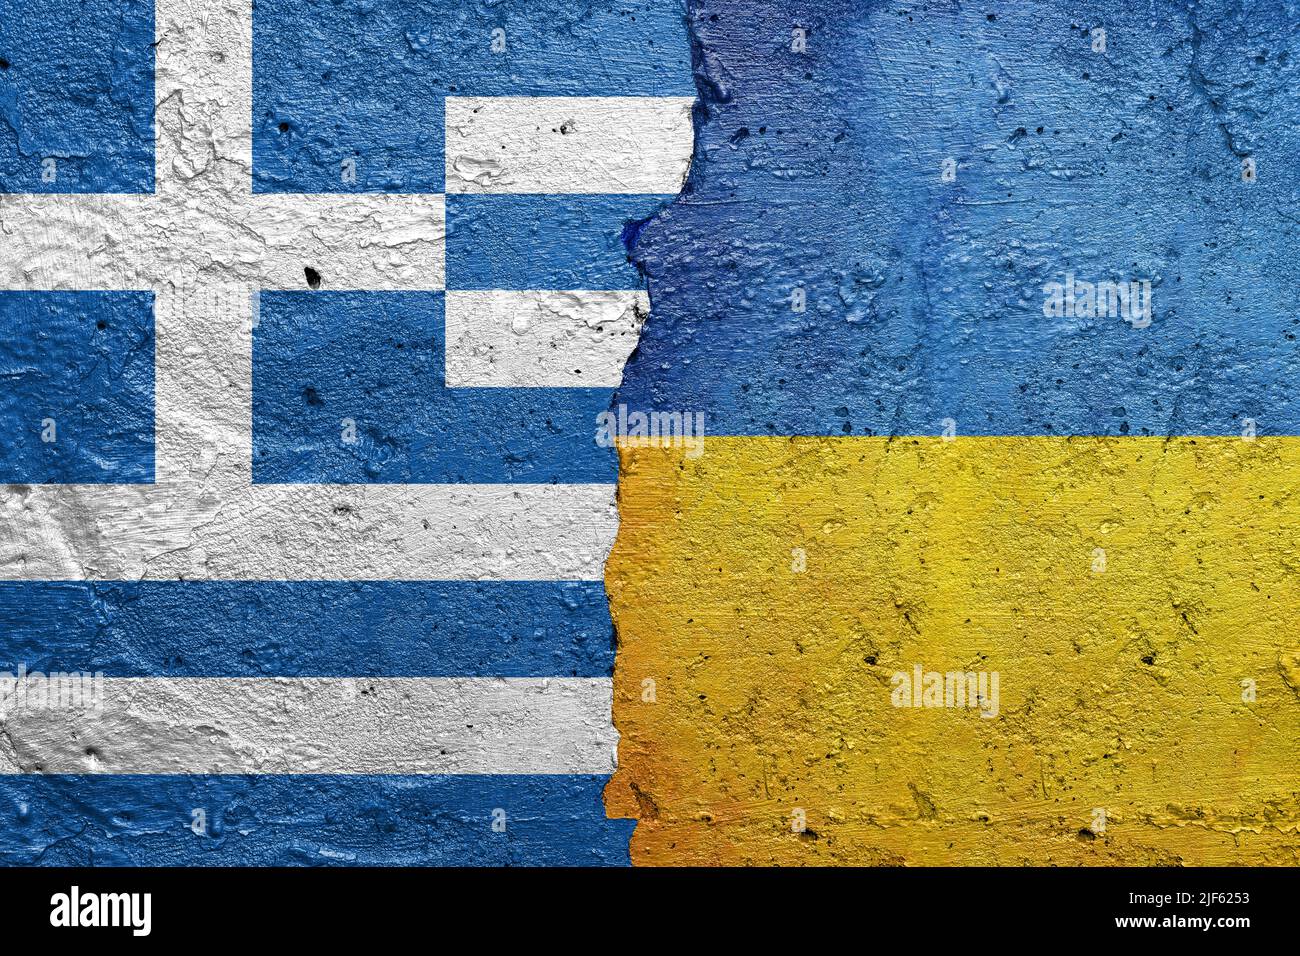 Grèce et Ukraine - mur de béton fissuré peint avec un drapeau grec à gauche et un drapeau ukrainien à droite Banque D'Images